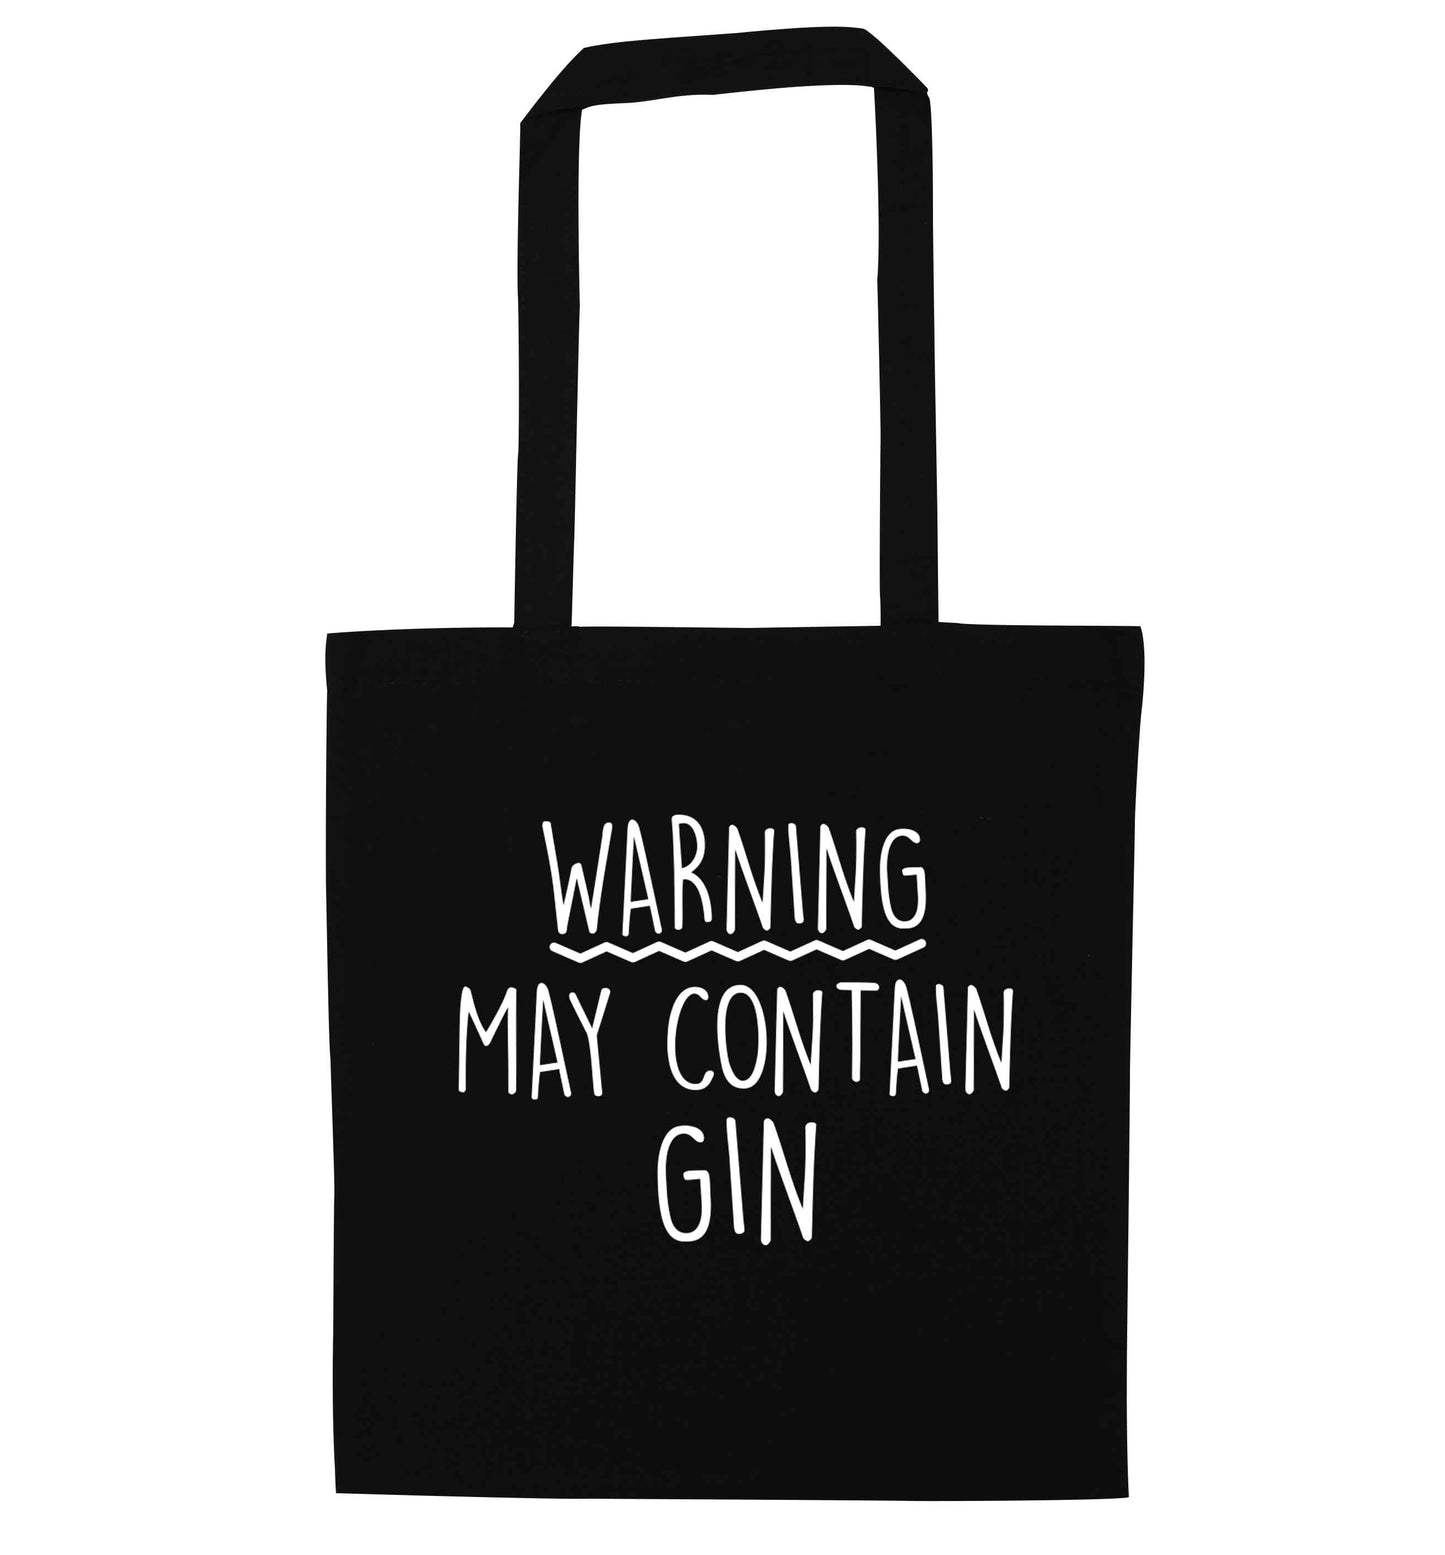 Warning may contain gin black tote bag